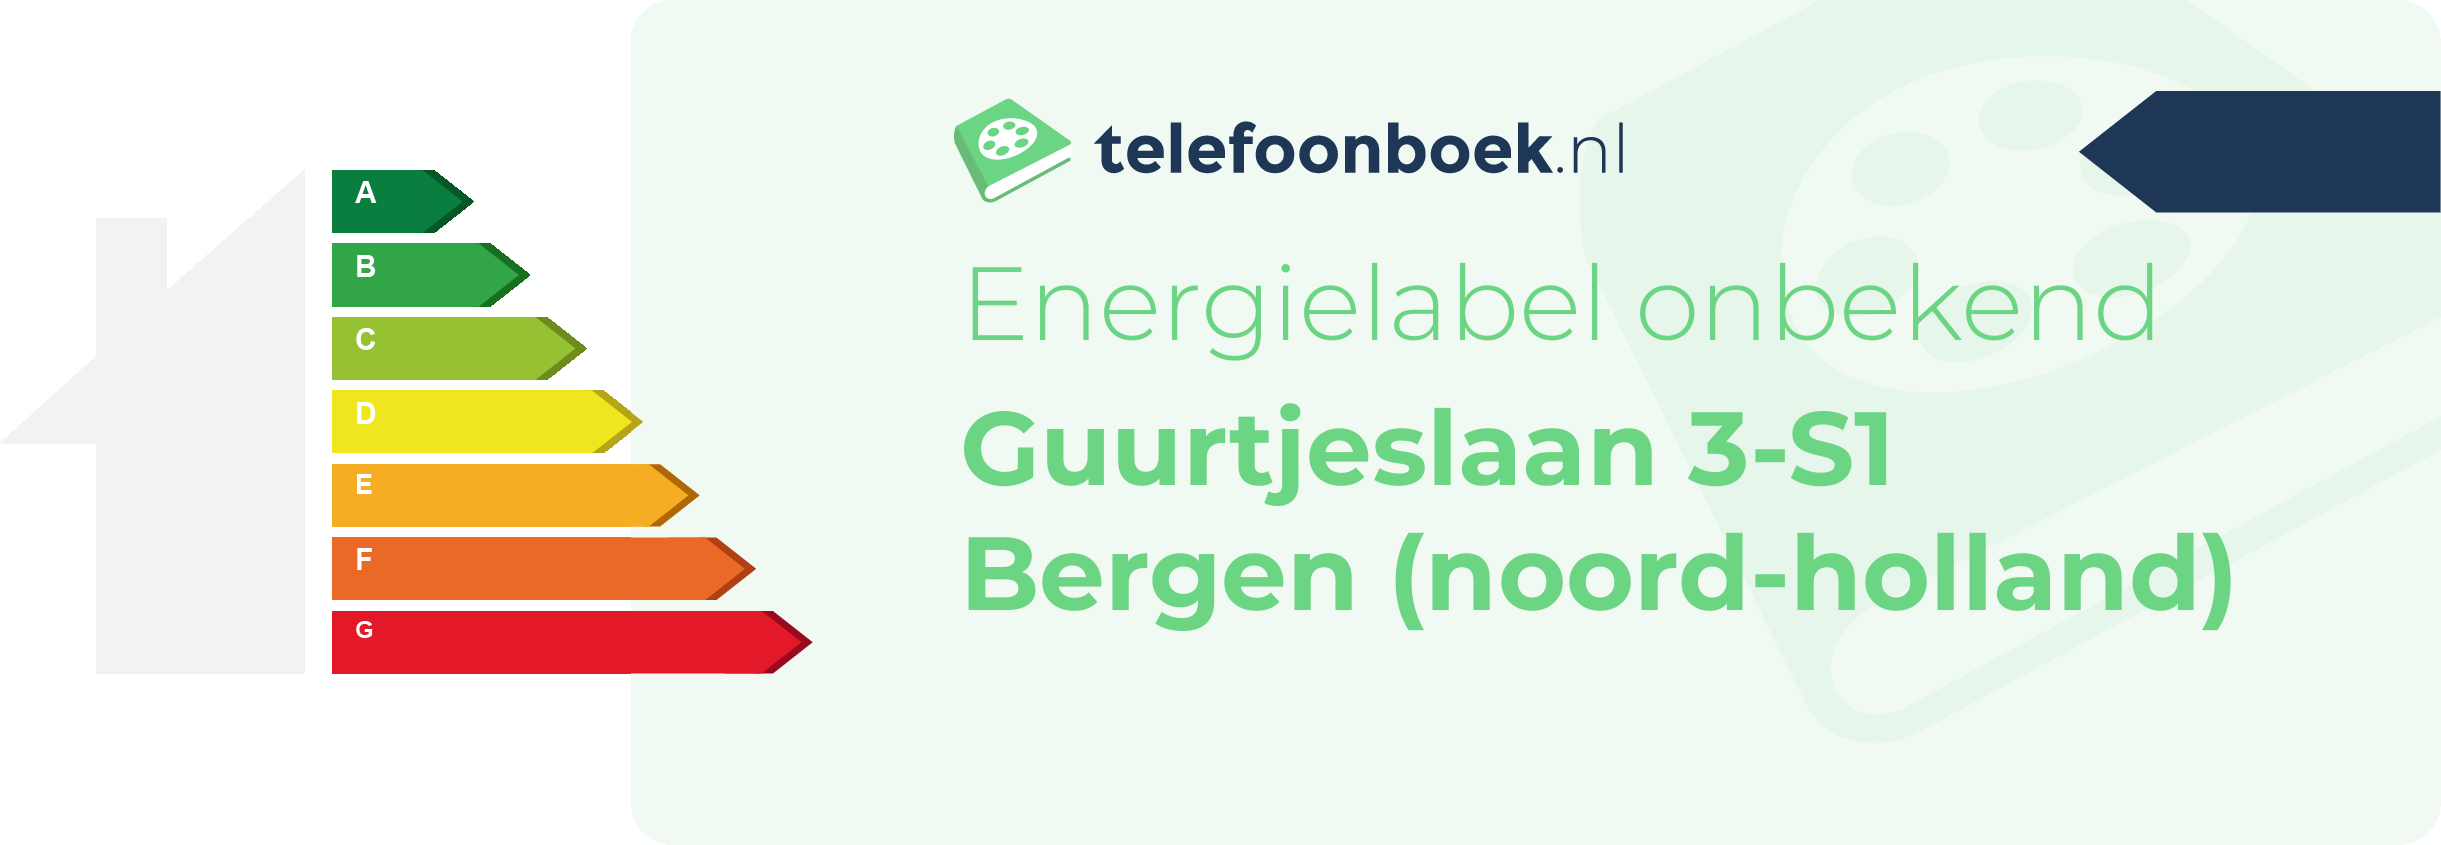 Energielabel Guurtjeslaan 3-S1 Bergen (Noord-Holland)